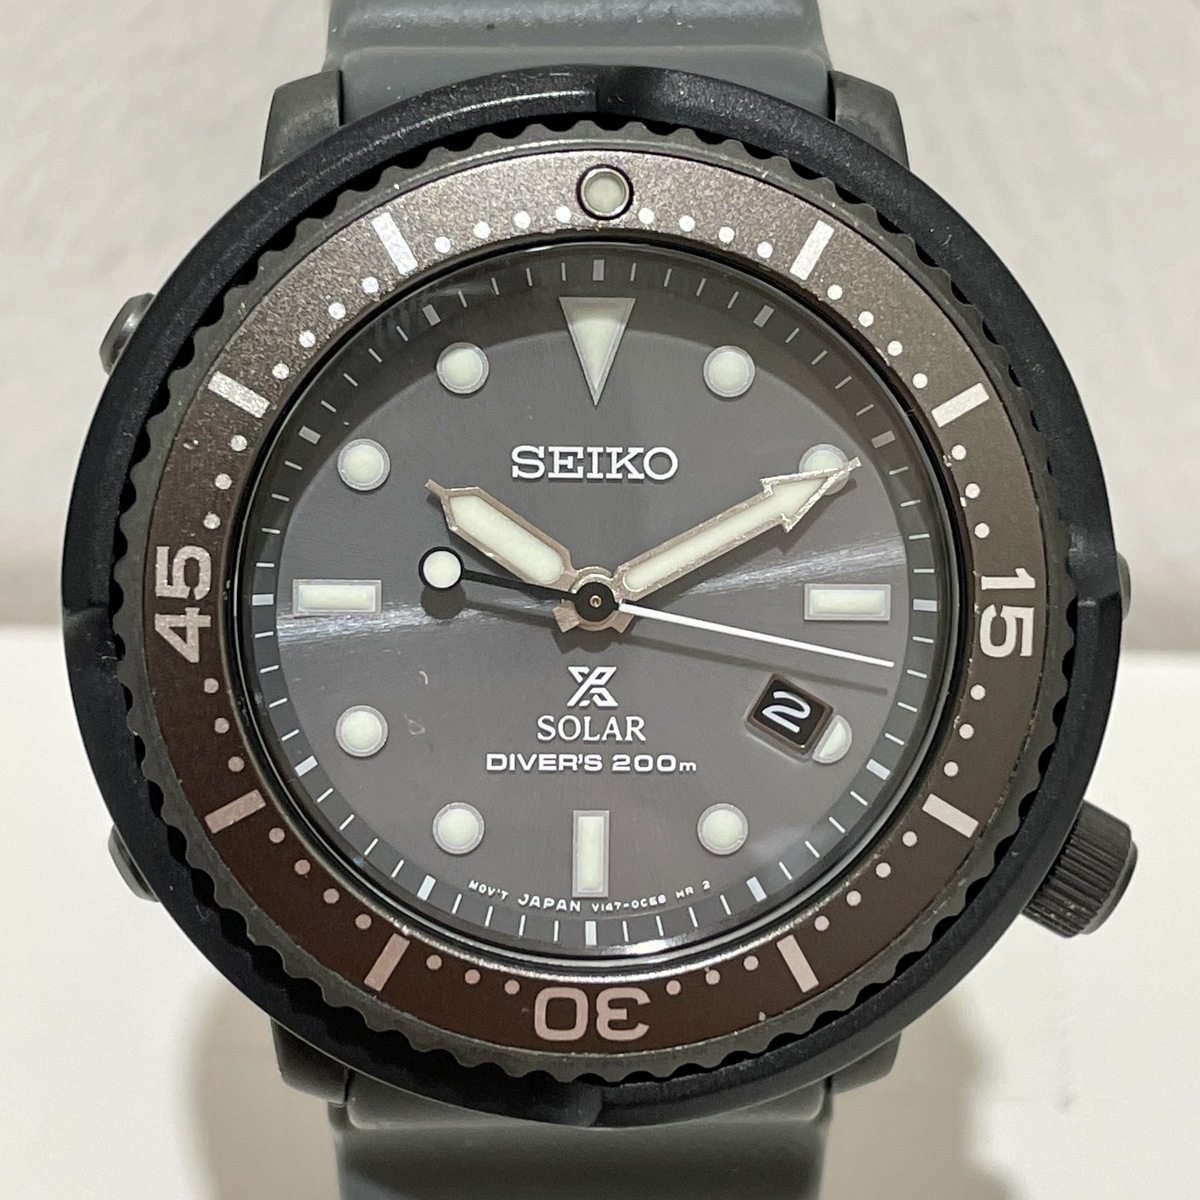 セイコーのLOWERCASE STBR023 プロスペックス ダイバーズ 腕時計の買取実績です。